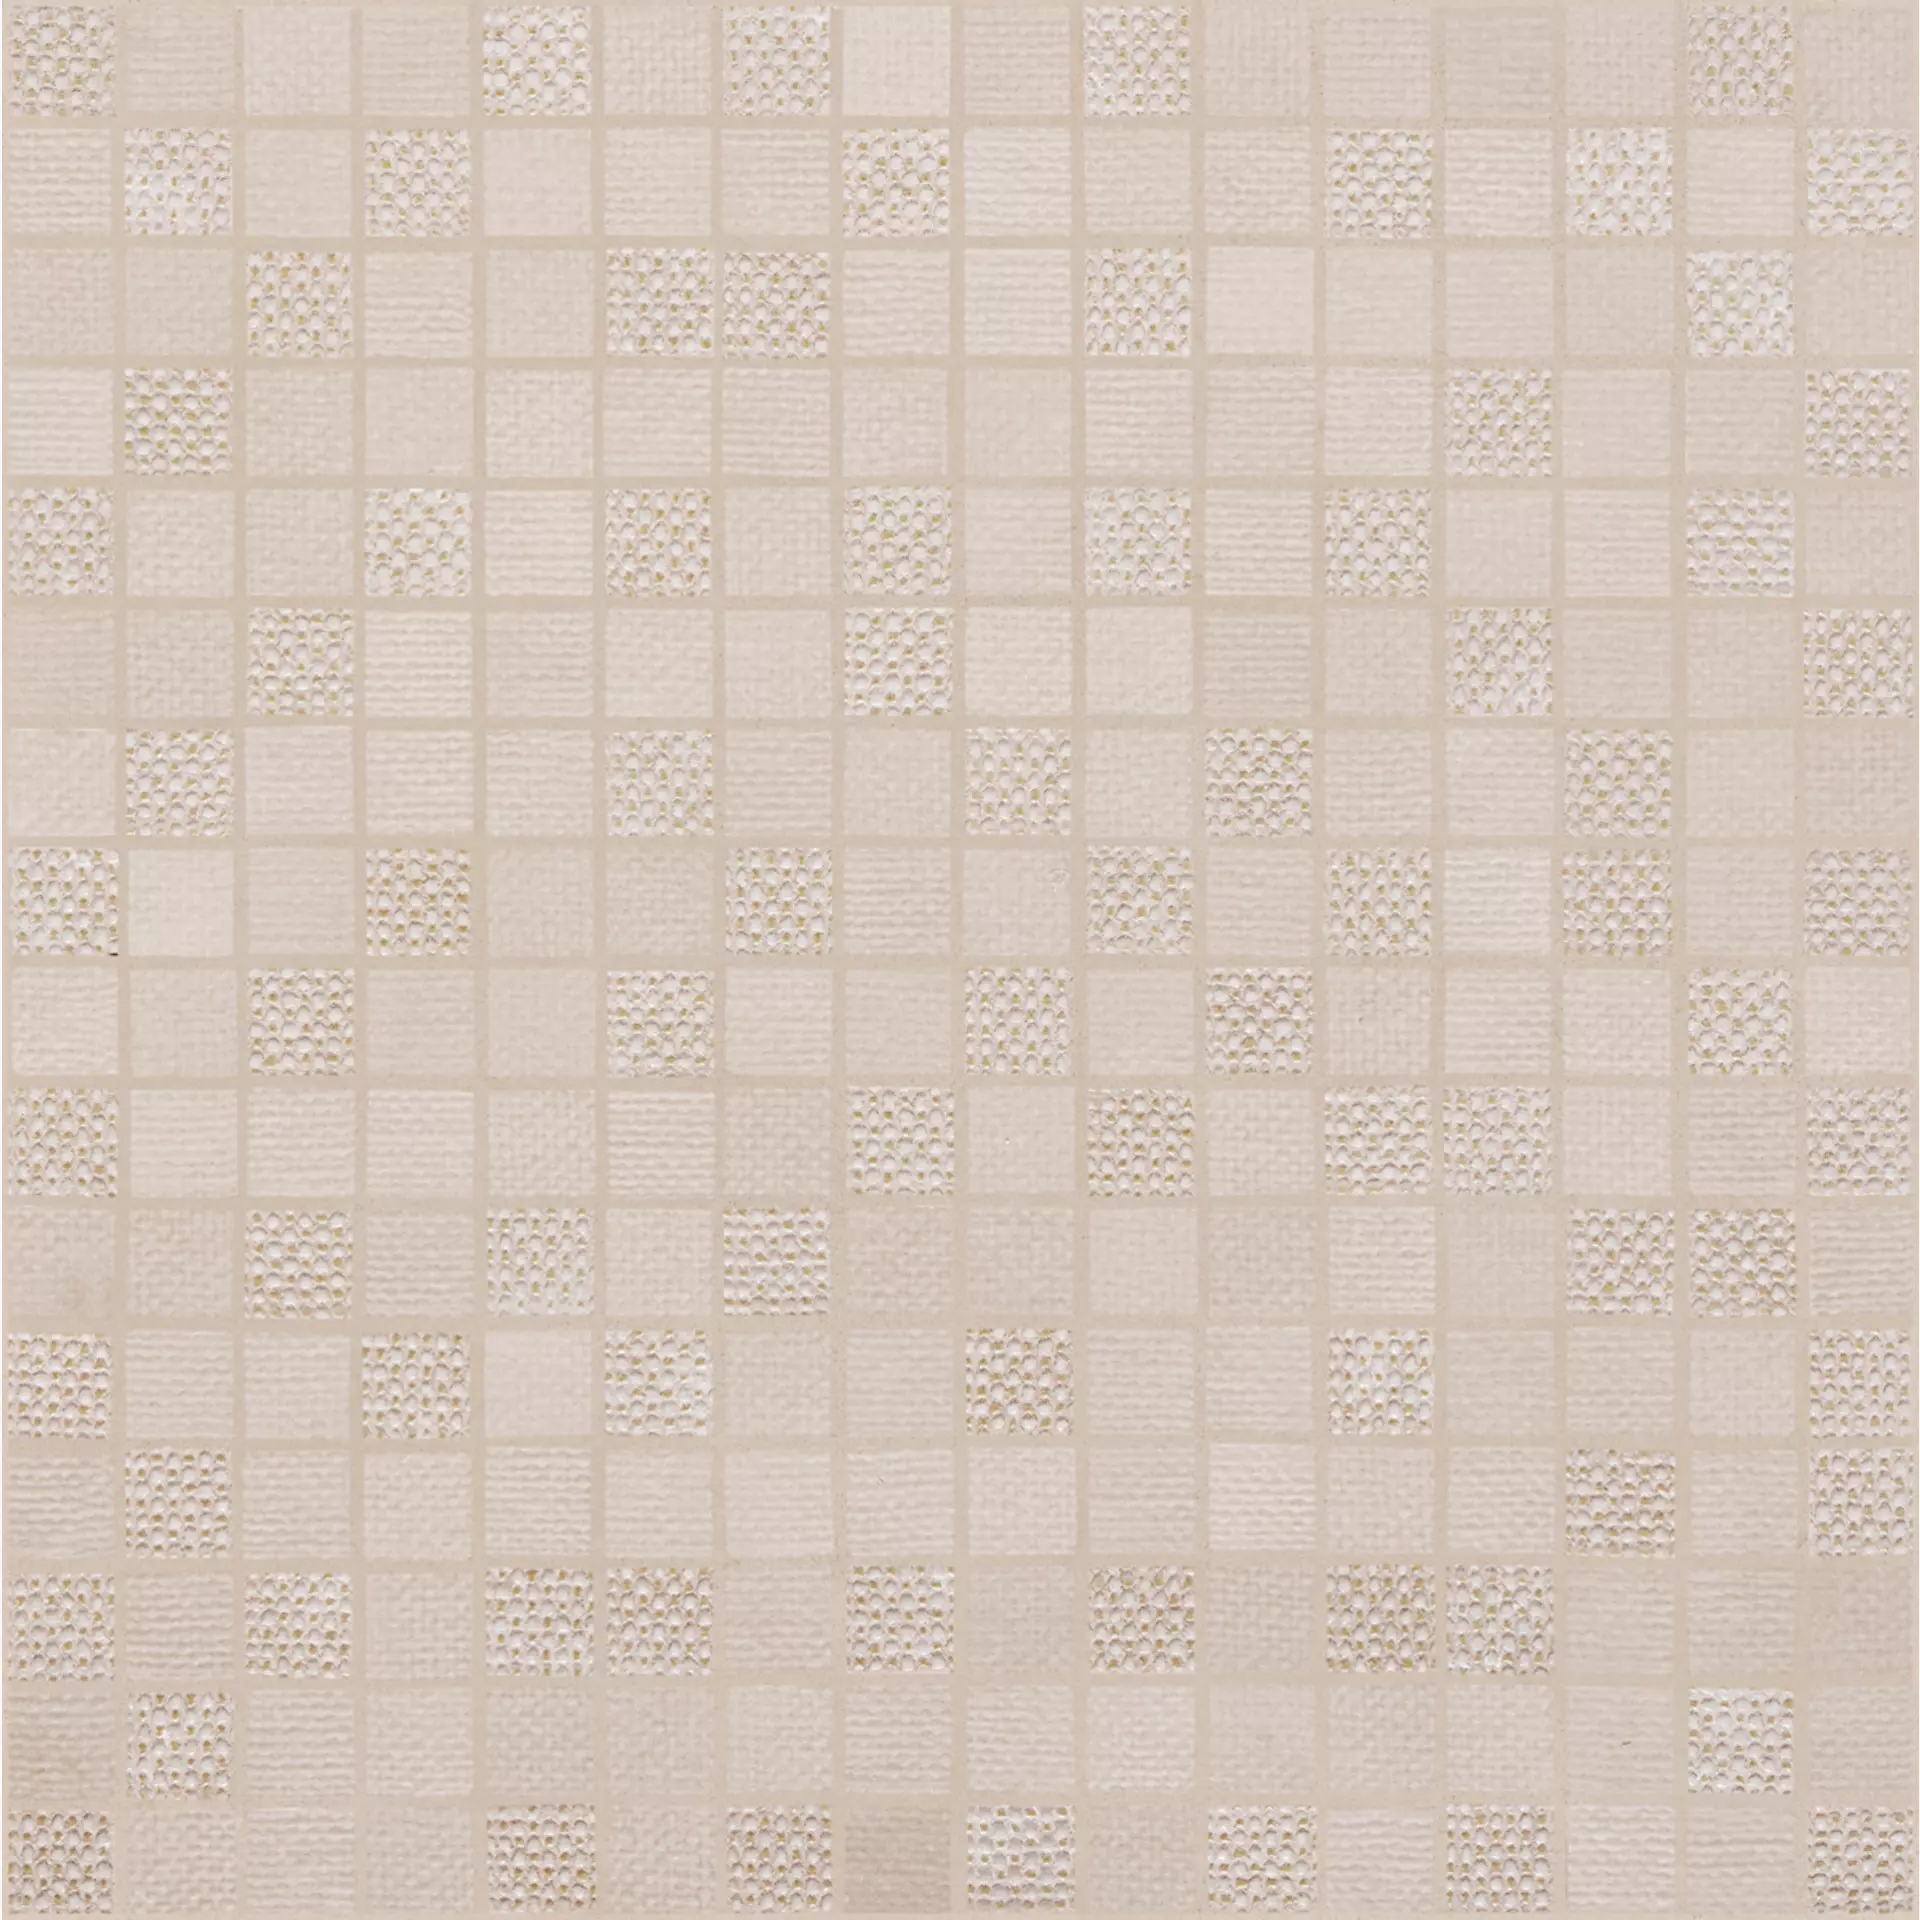 Wandfliese Marazzi Fabric Cotton Naturale – Matt Cotton MPDH matt natur 40x40cm Mosaik 6mm